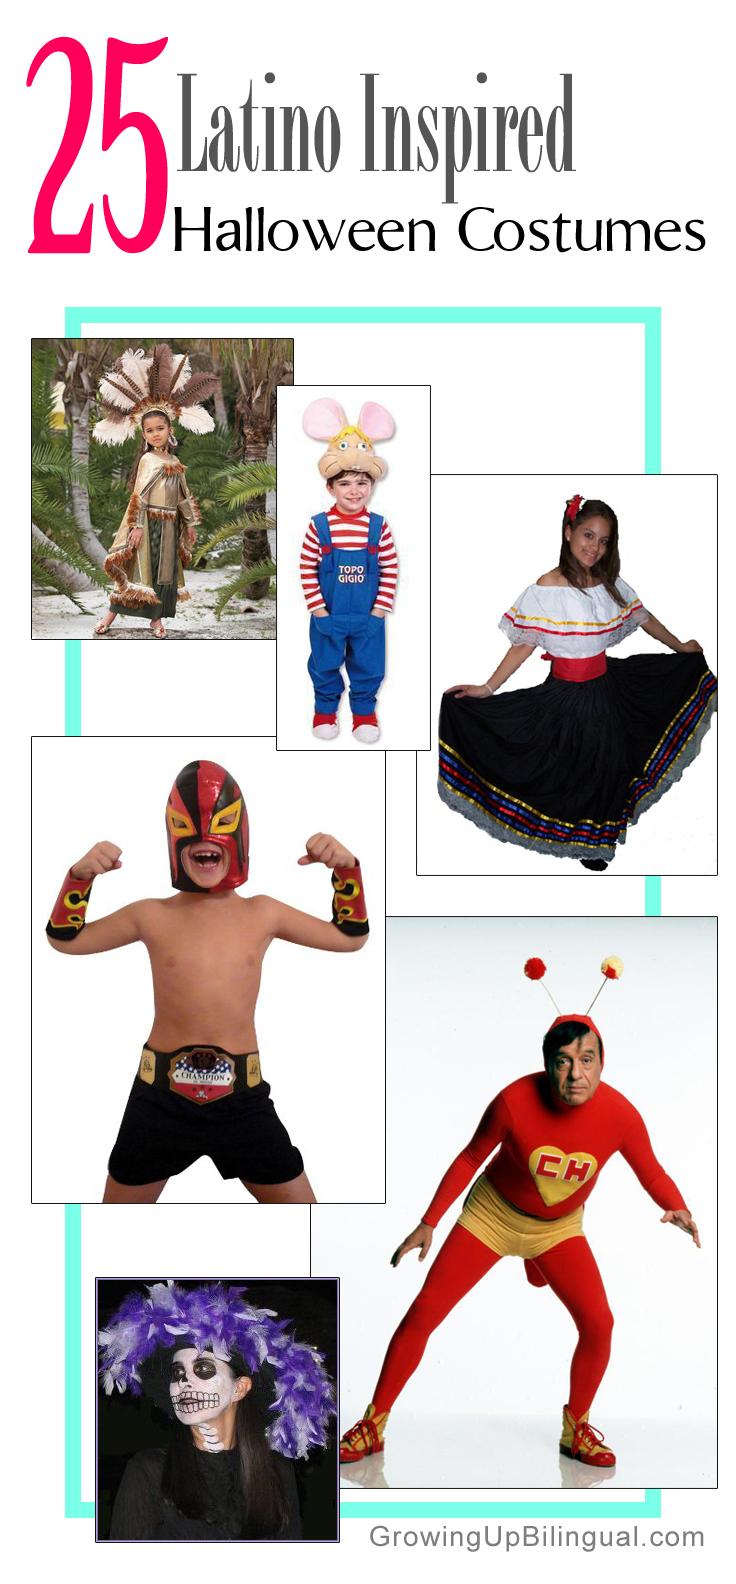 Latino Inspired Halloween costumes